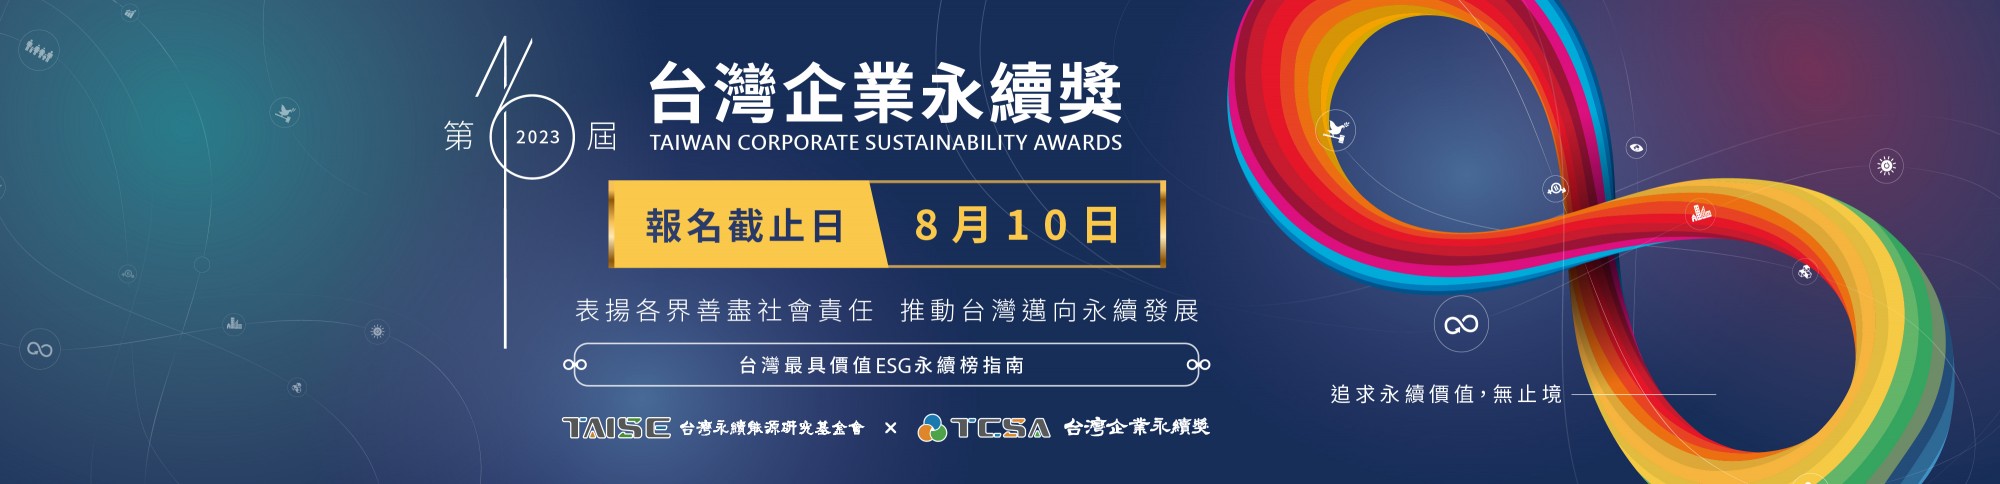 2023年 第16屆 TCSA台灣企業永續獎 開放報名  